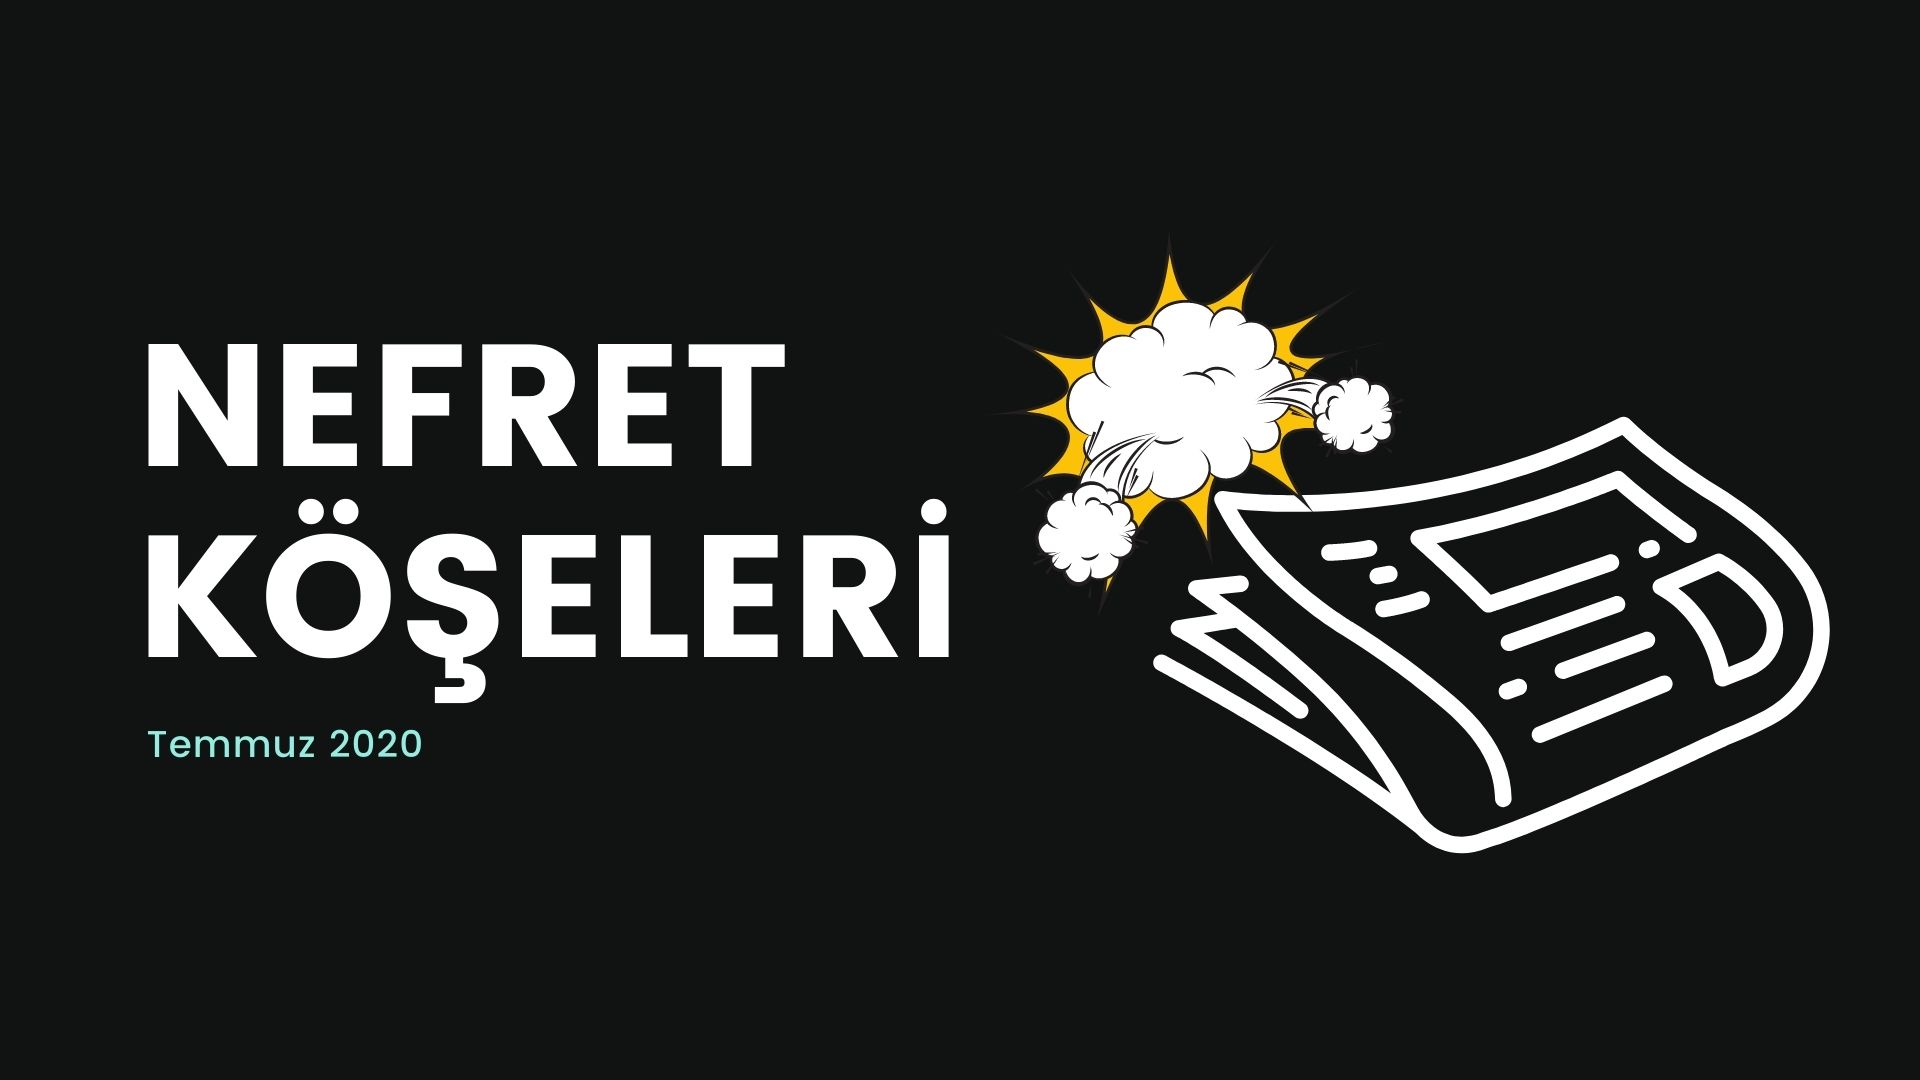 Temmuz’un nefret “köşe”lerinde hedef İstanbul Sözleşmesi | Kaos GL - LGBTİ+ Haber Portalı